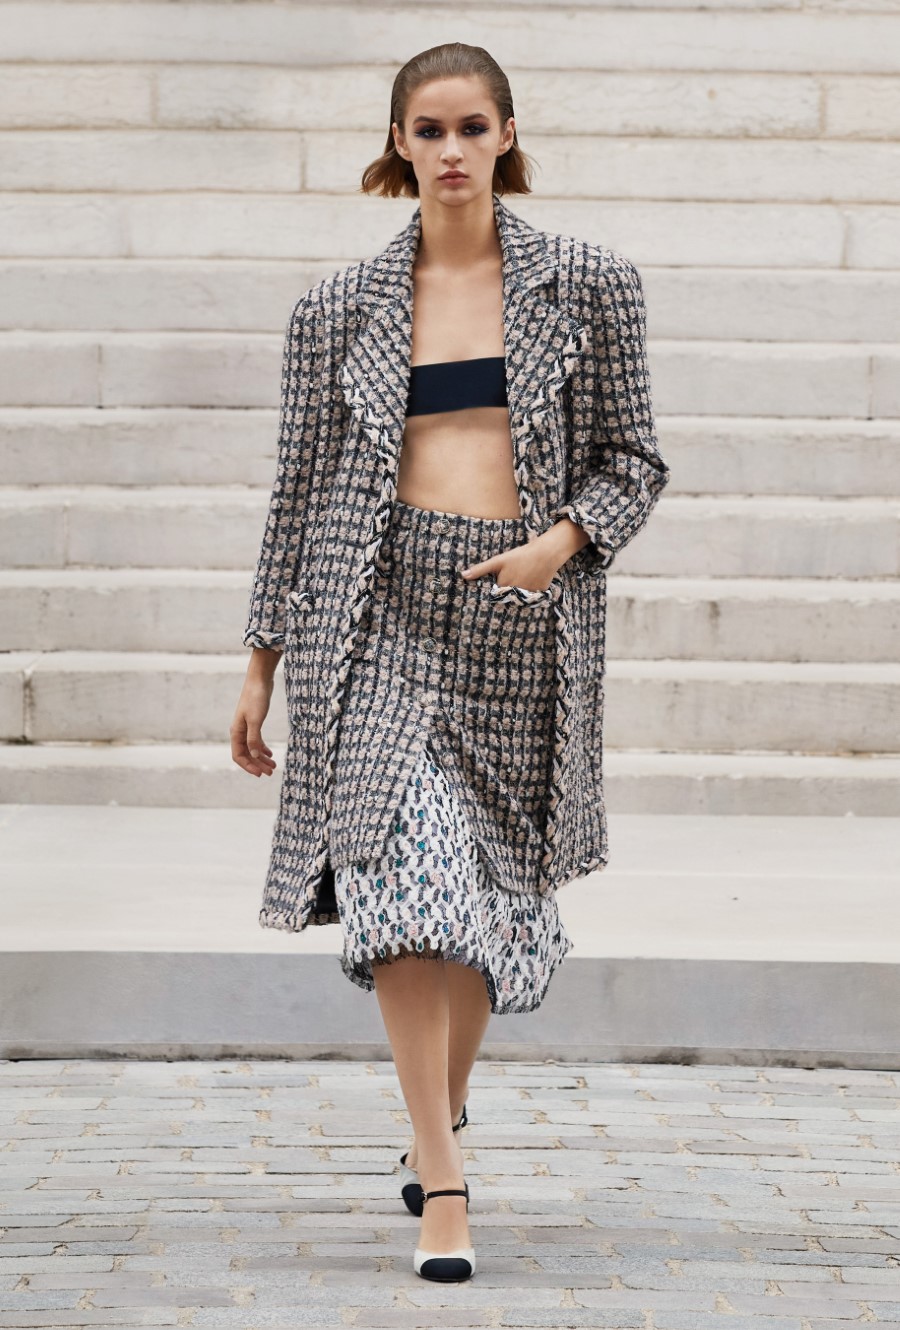 Chanel Haute Couture Fall Winter 2021